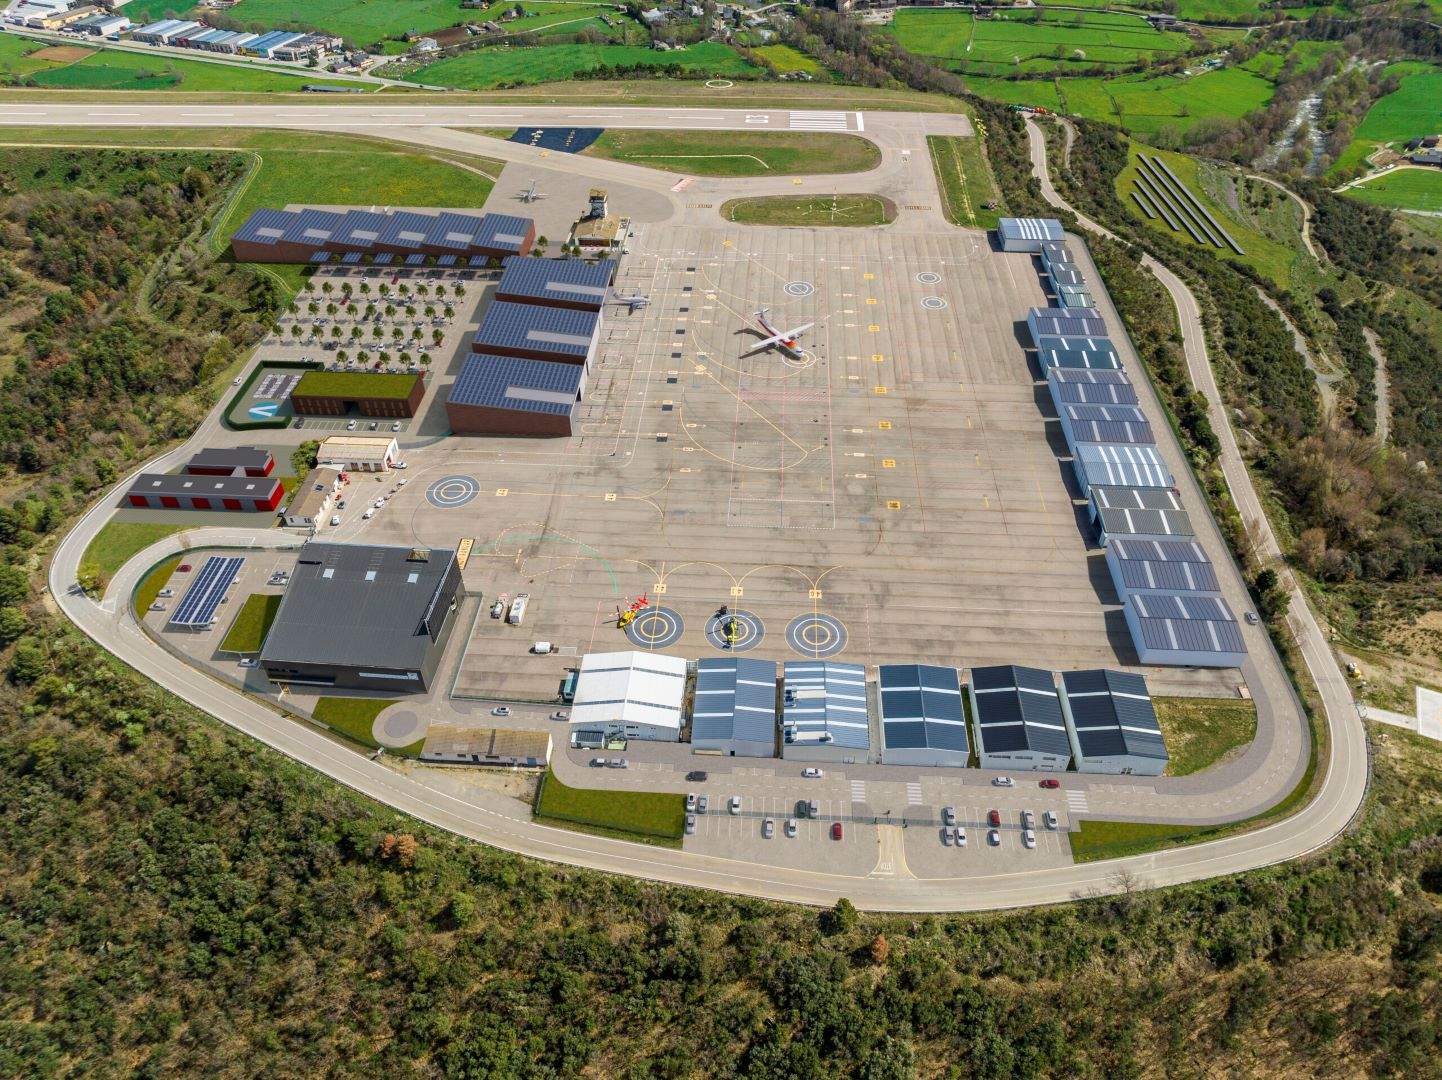 El aeropuerto de Andorra - La Seu d'Urgell prevé una ampliación con una nueva zona para 9 hangares